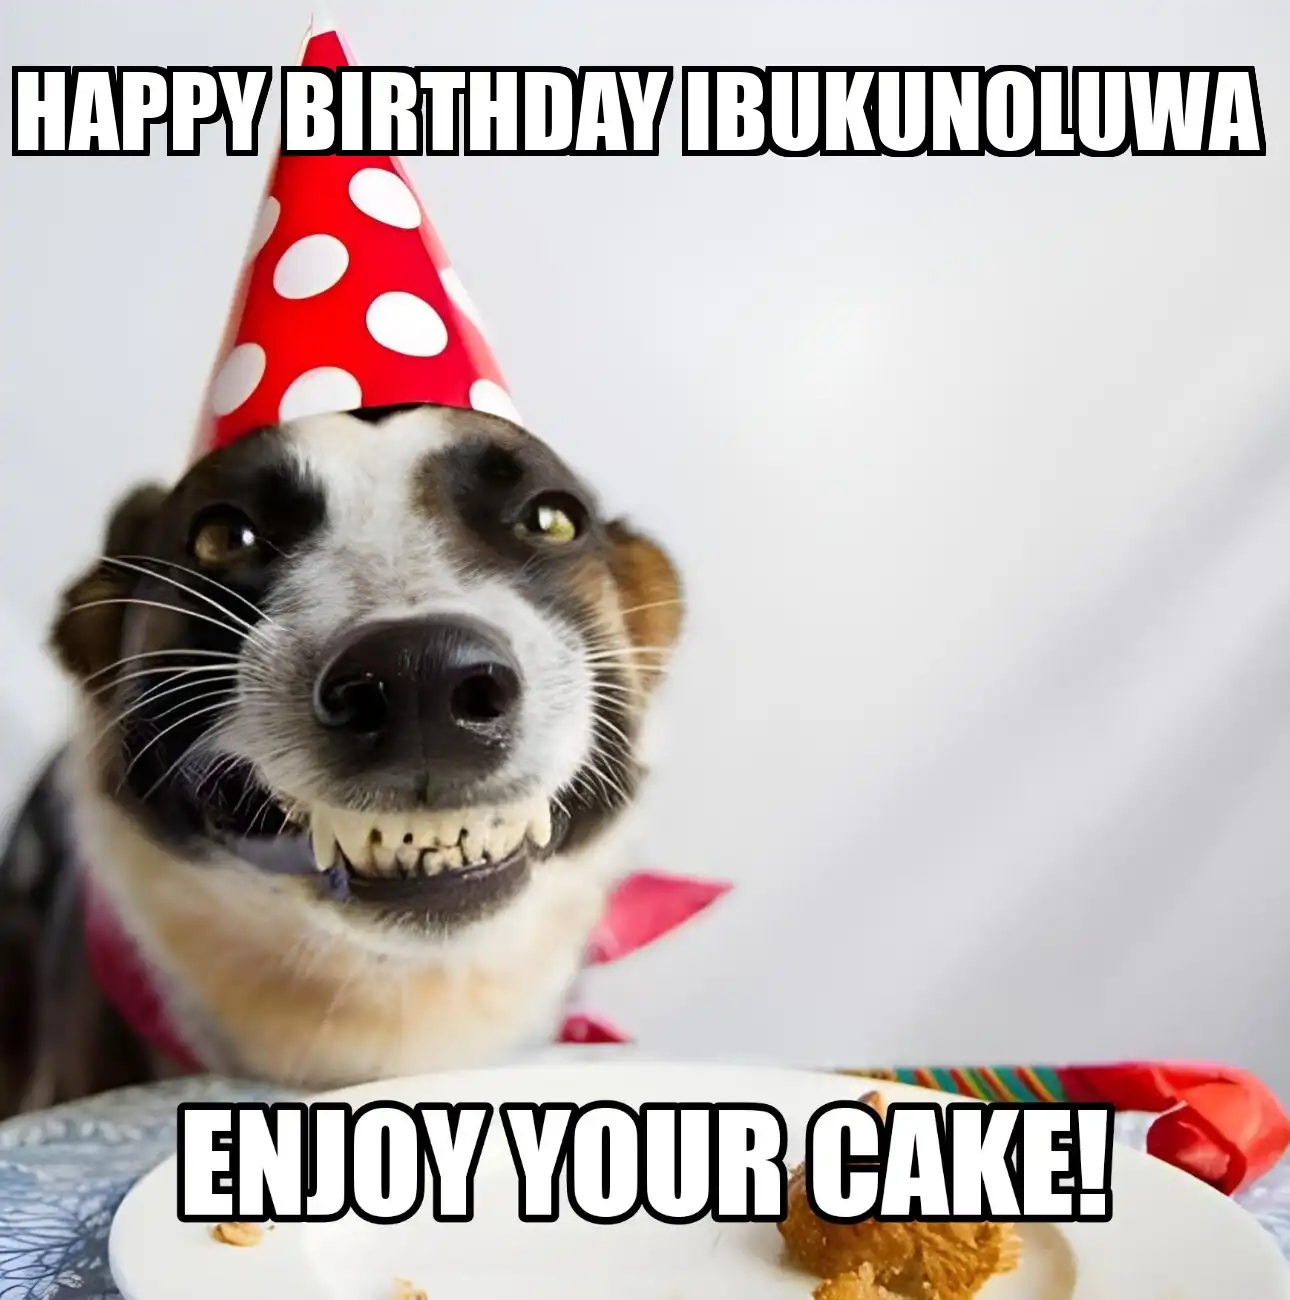 Happy Birthday Ibukunoluwa Enjoy Your Cake Dog Meme